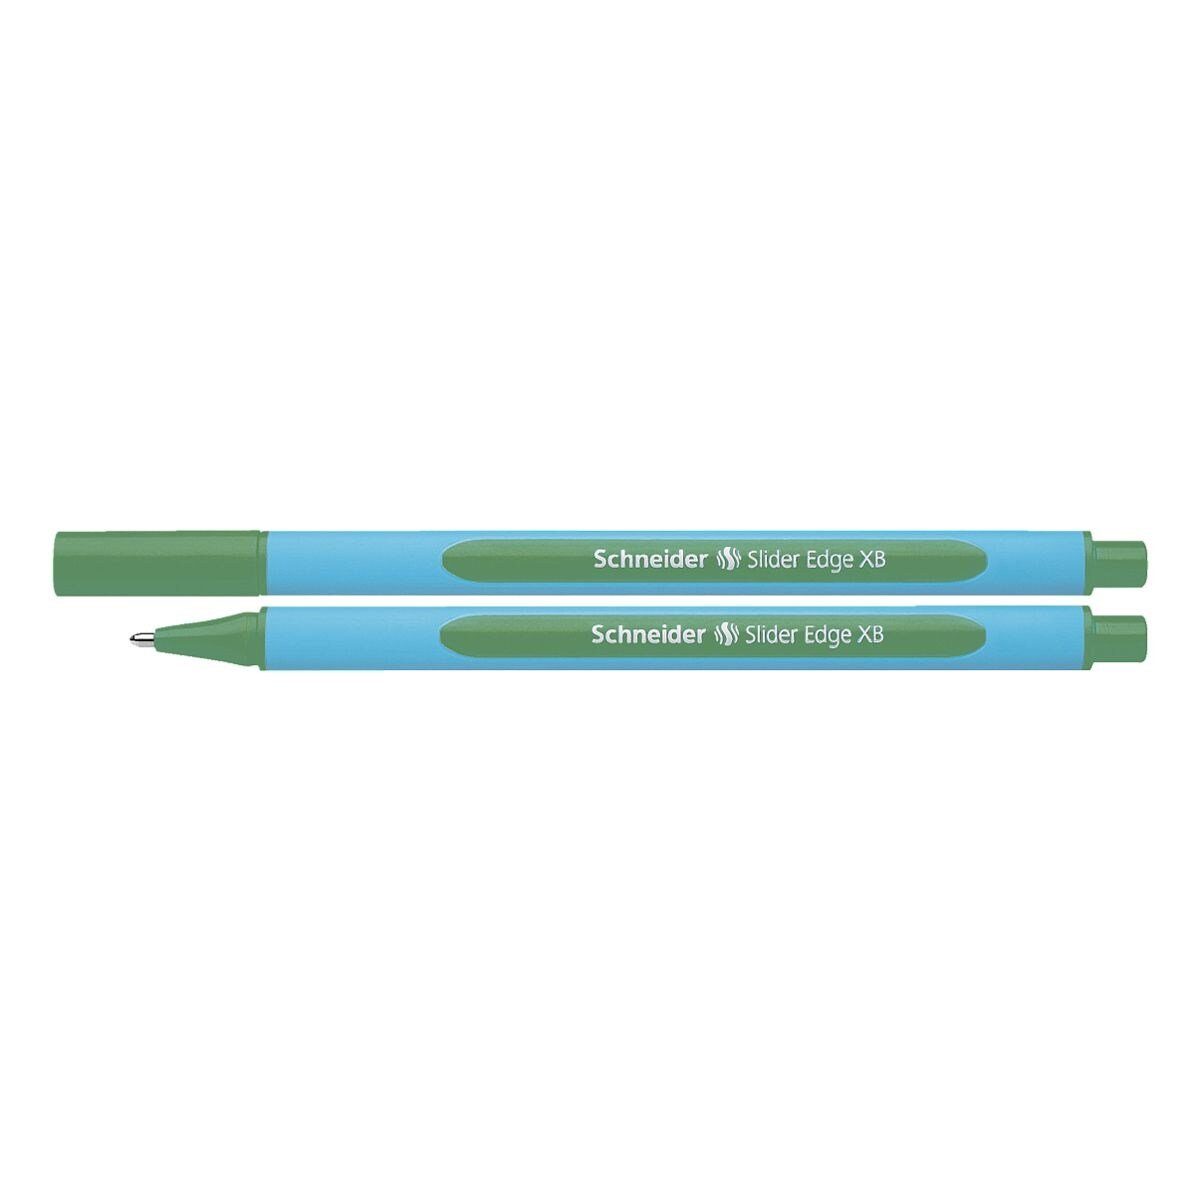 Schneider Kugelschreiber Slider Edge XB 1522, mit Kappe, Strichbreite: 0,7 mm (XB) grün